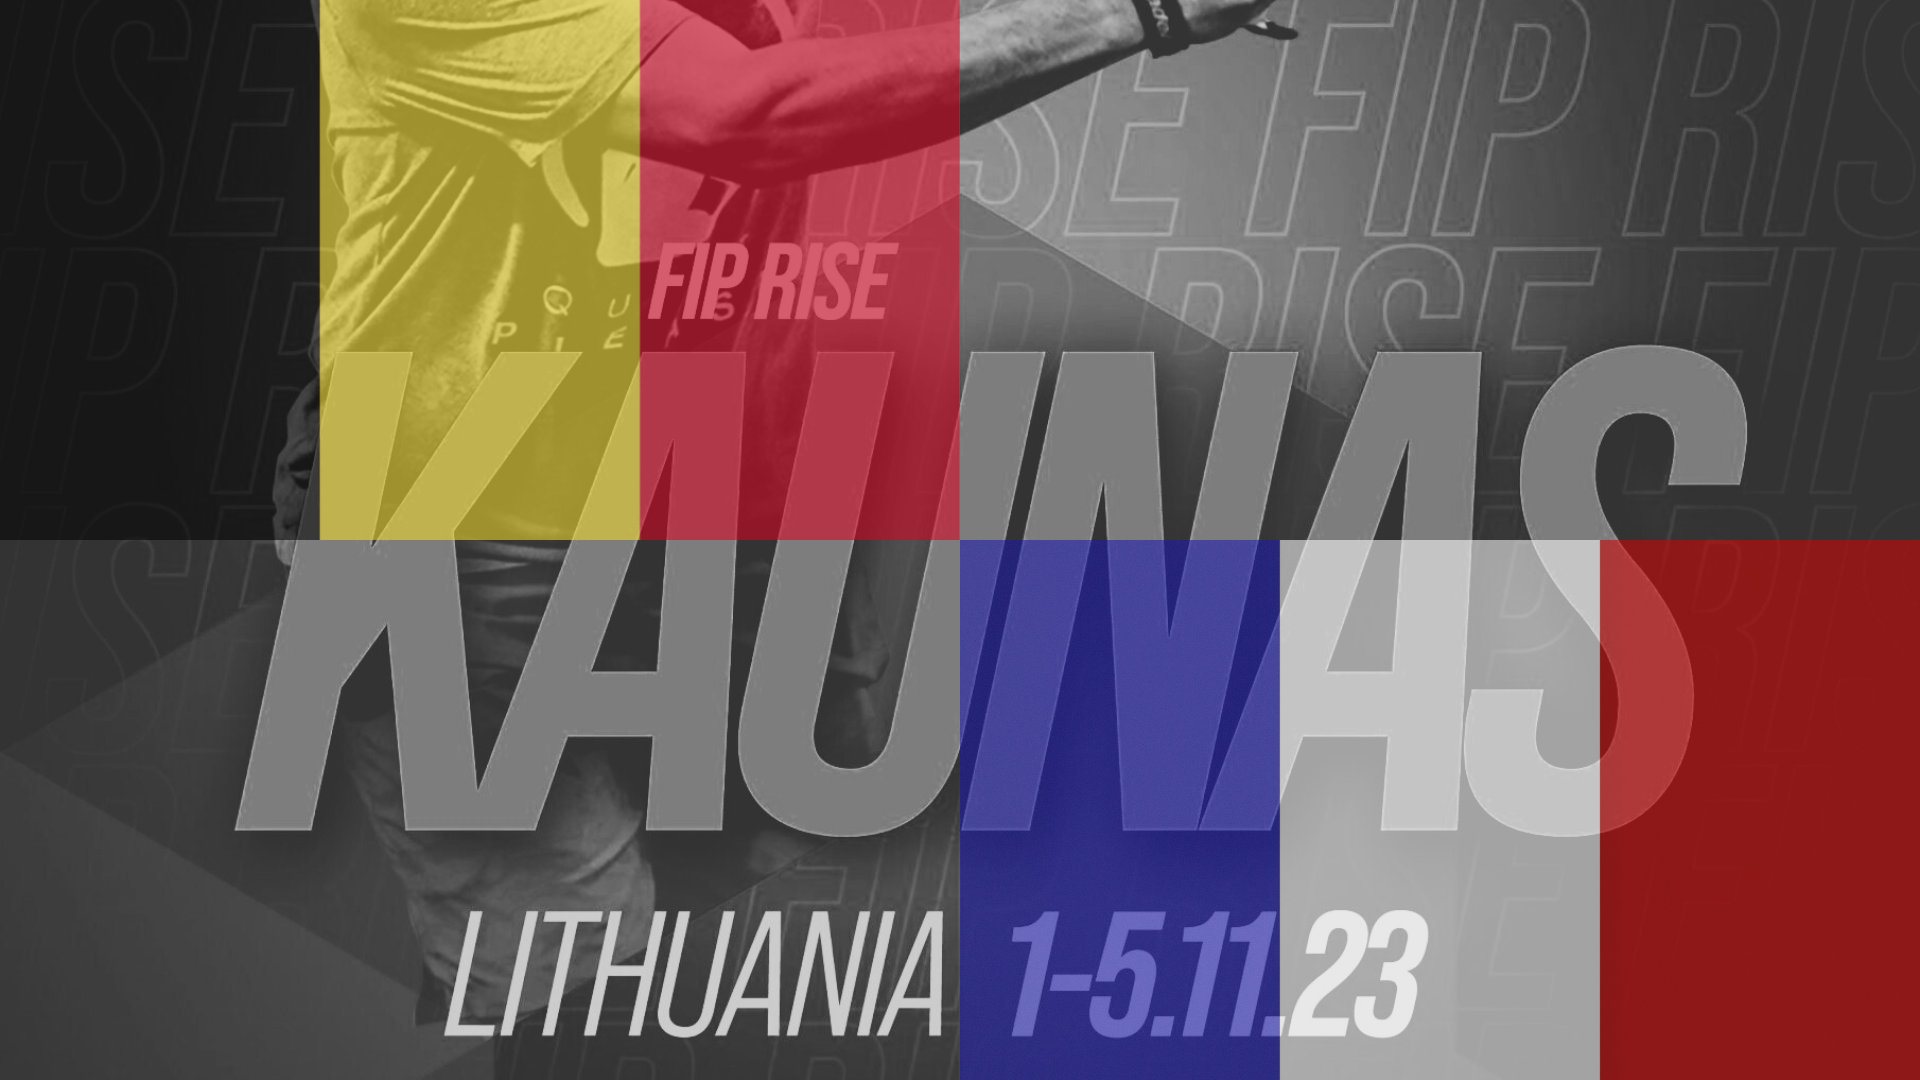 FIP Rise Kaunas: un dúo franco-belga y una pareja 100% tricolor se enfrentan a Lituania